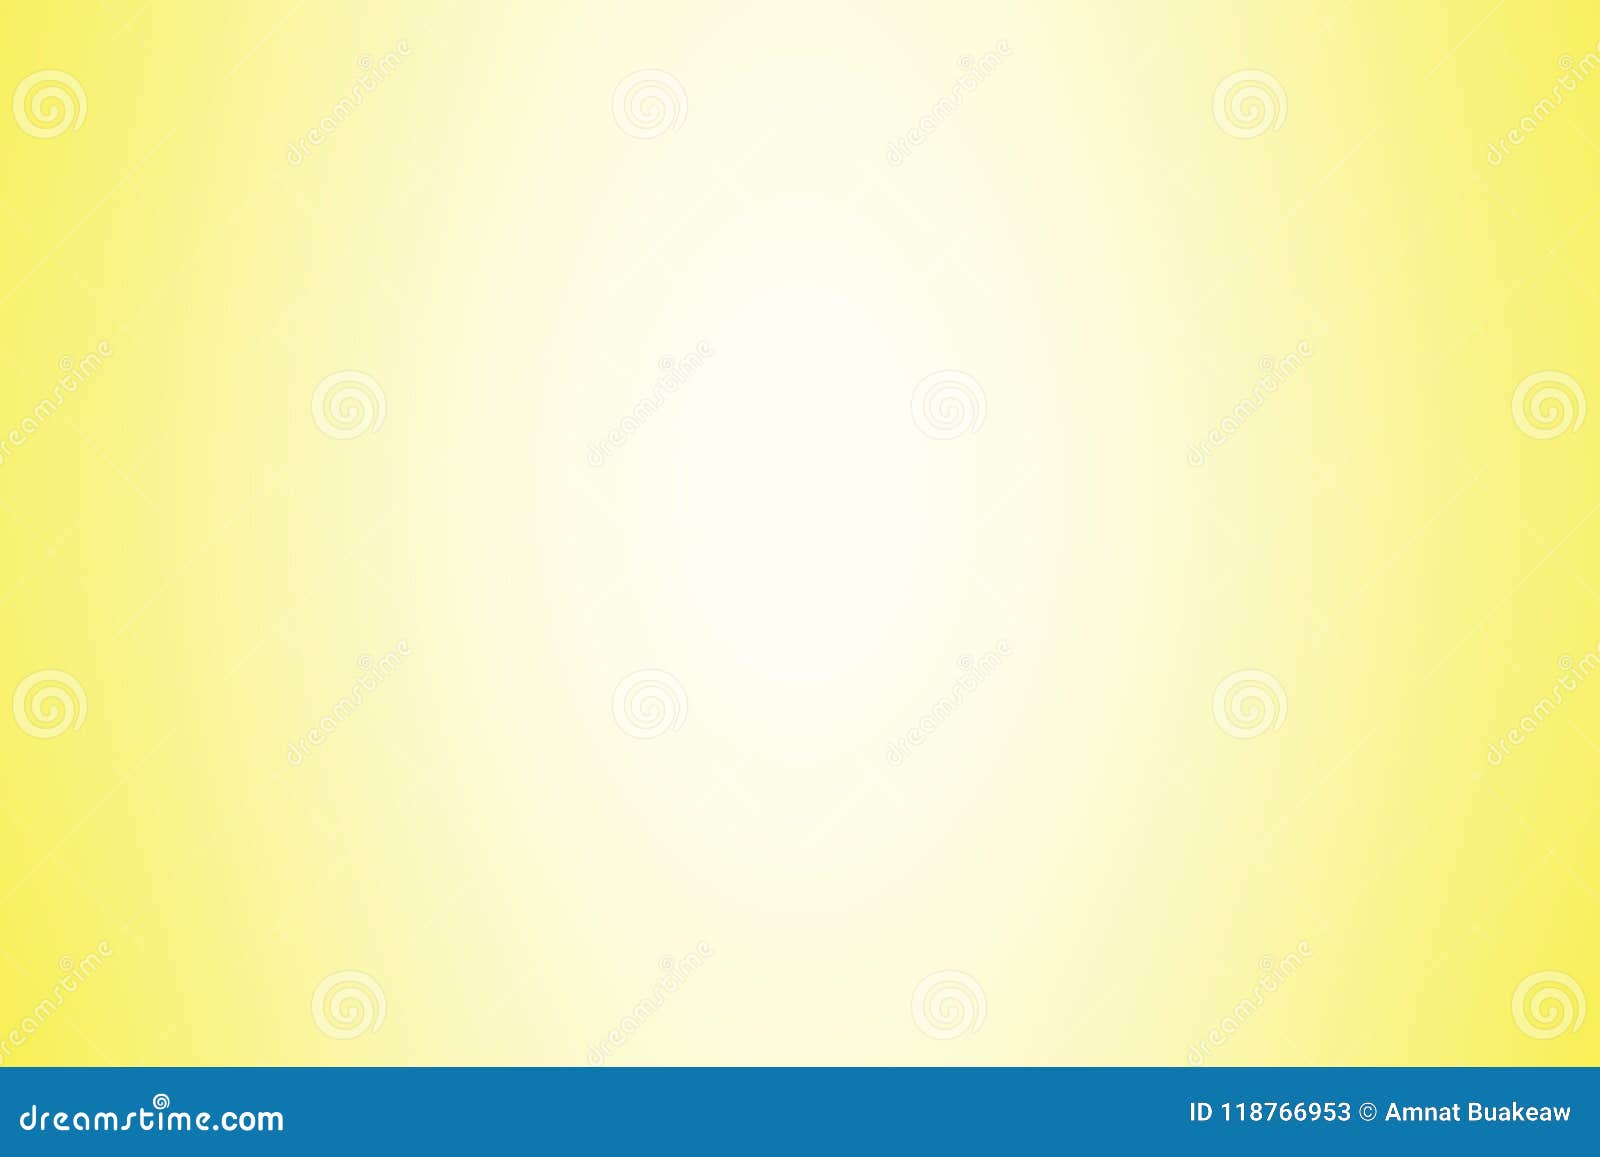 Màu nền gradient màu vàng Soft Light là một trong những lựa chọn tuyệt vời để tạo ra sự nổi bật, nhẹ nhàng và tinh tế cho máy tính của bạn. Sự pha trộn màu vàng và màu trắng tạo nên một hình ảnh nhẹ nhàng, hấp dẫn và rất thu hút. Hãy đến và khám phá hình ảnh này ngay bây giờ!